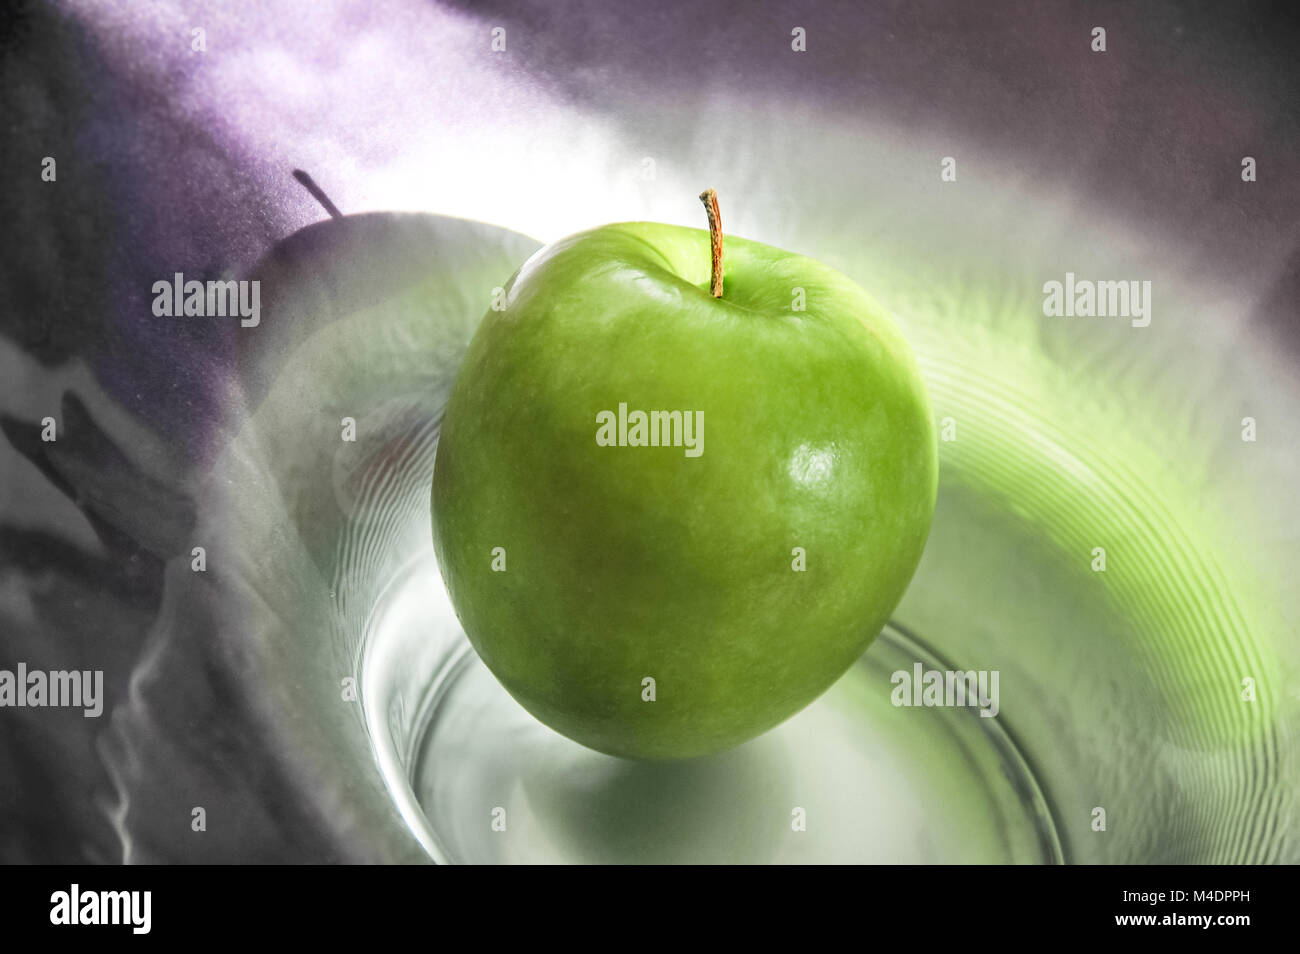 Une pomme verte artistiquement éclairée sur une plaque de verre Banque D'Images